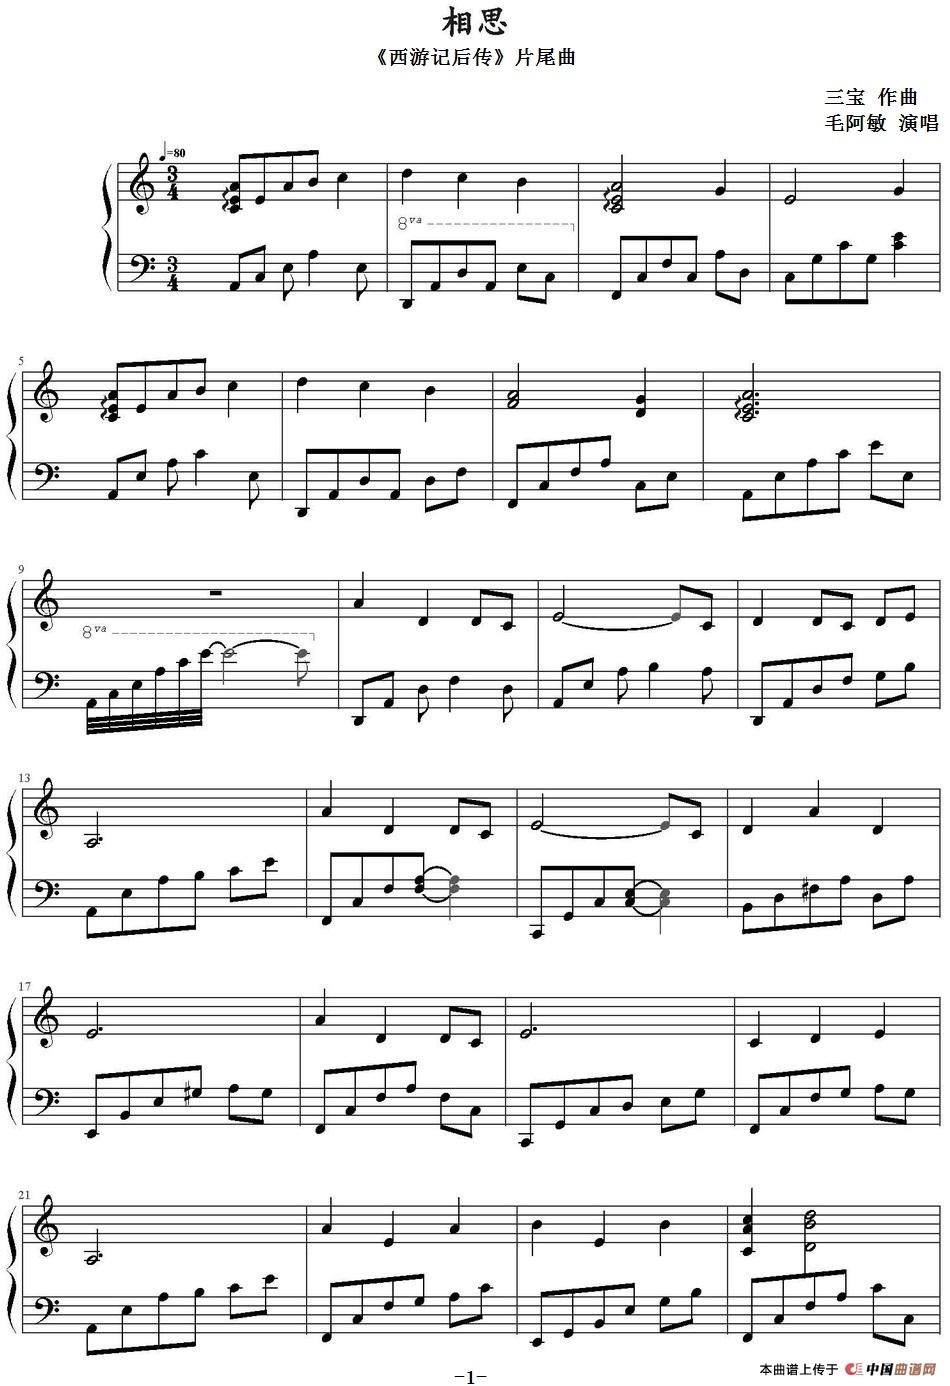 《相思》钢琴曲谱图分享